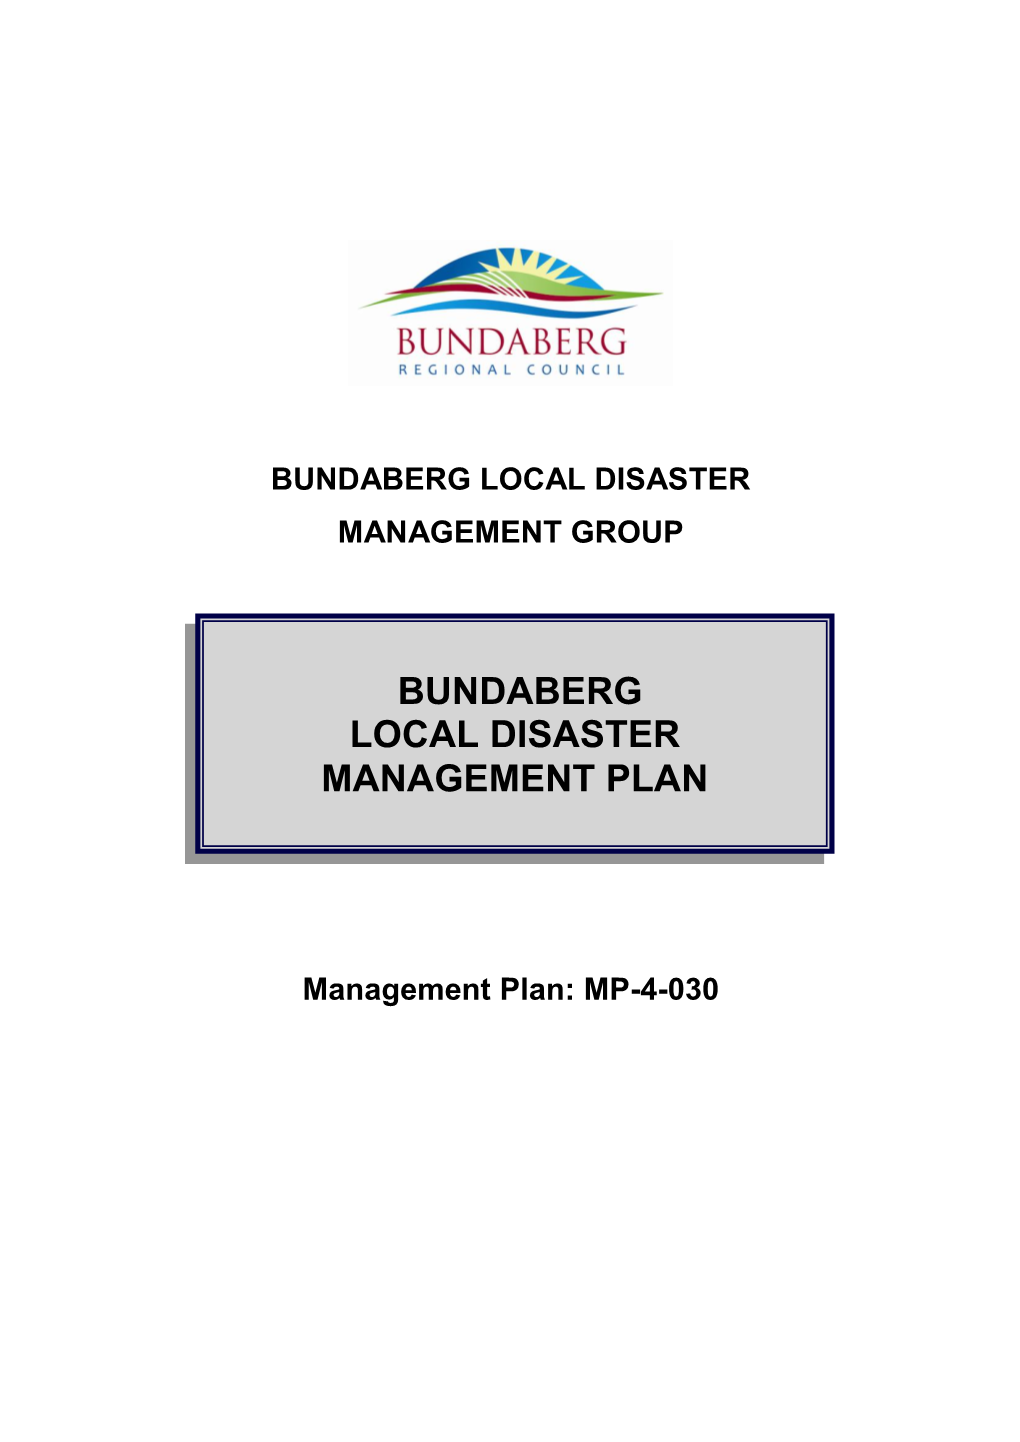 Bundaberg Local Disaster Management Plan